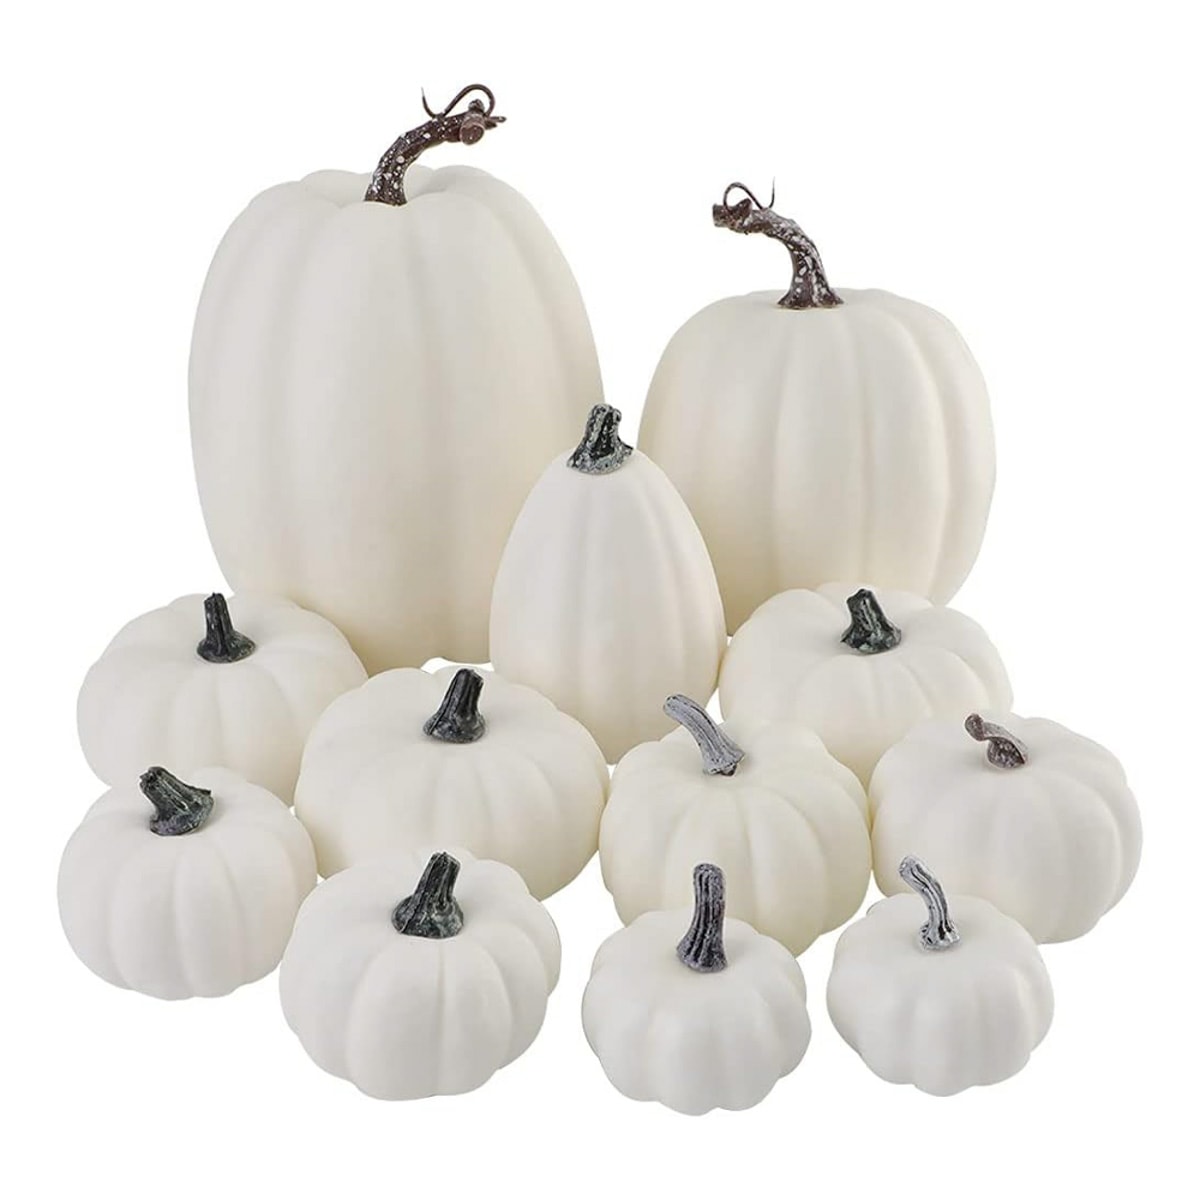 Multiple white faux pumpkins.